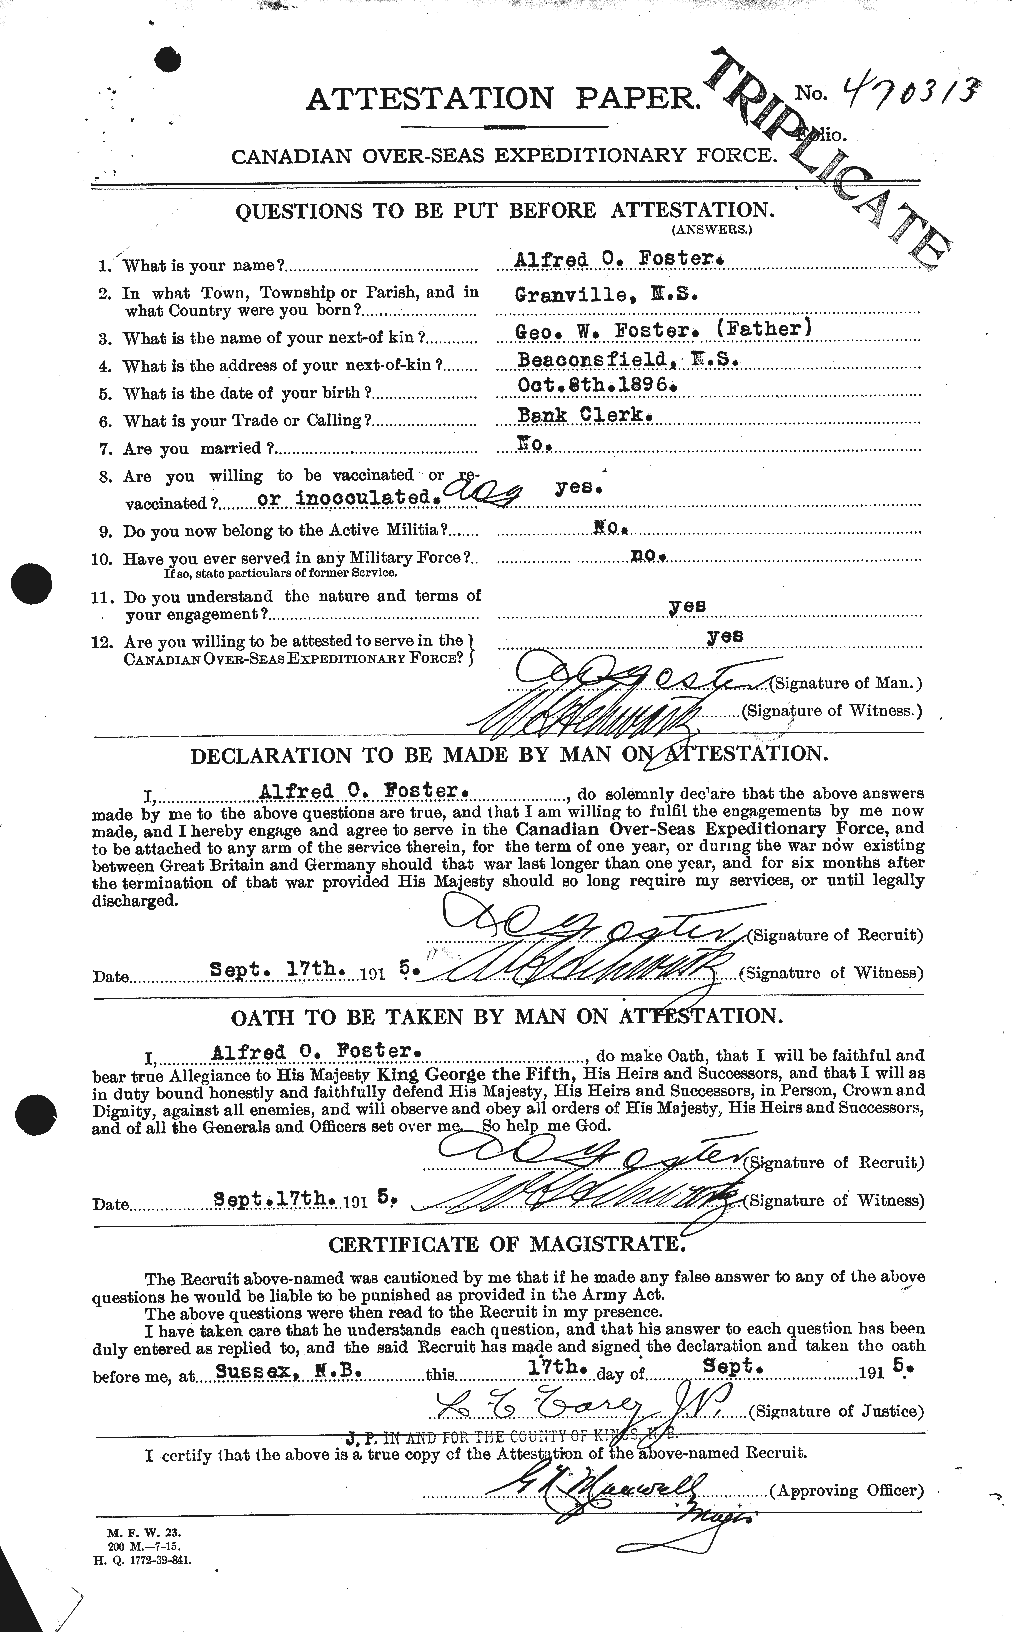 Dossiers du Personnel de la Première Guerre mondiale - CEC 330451a